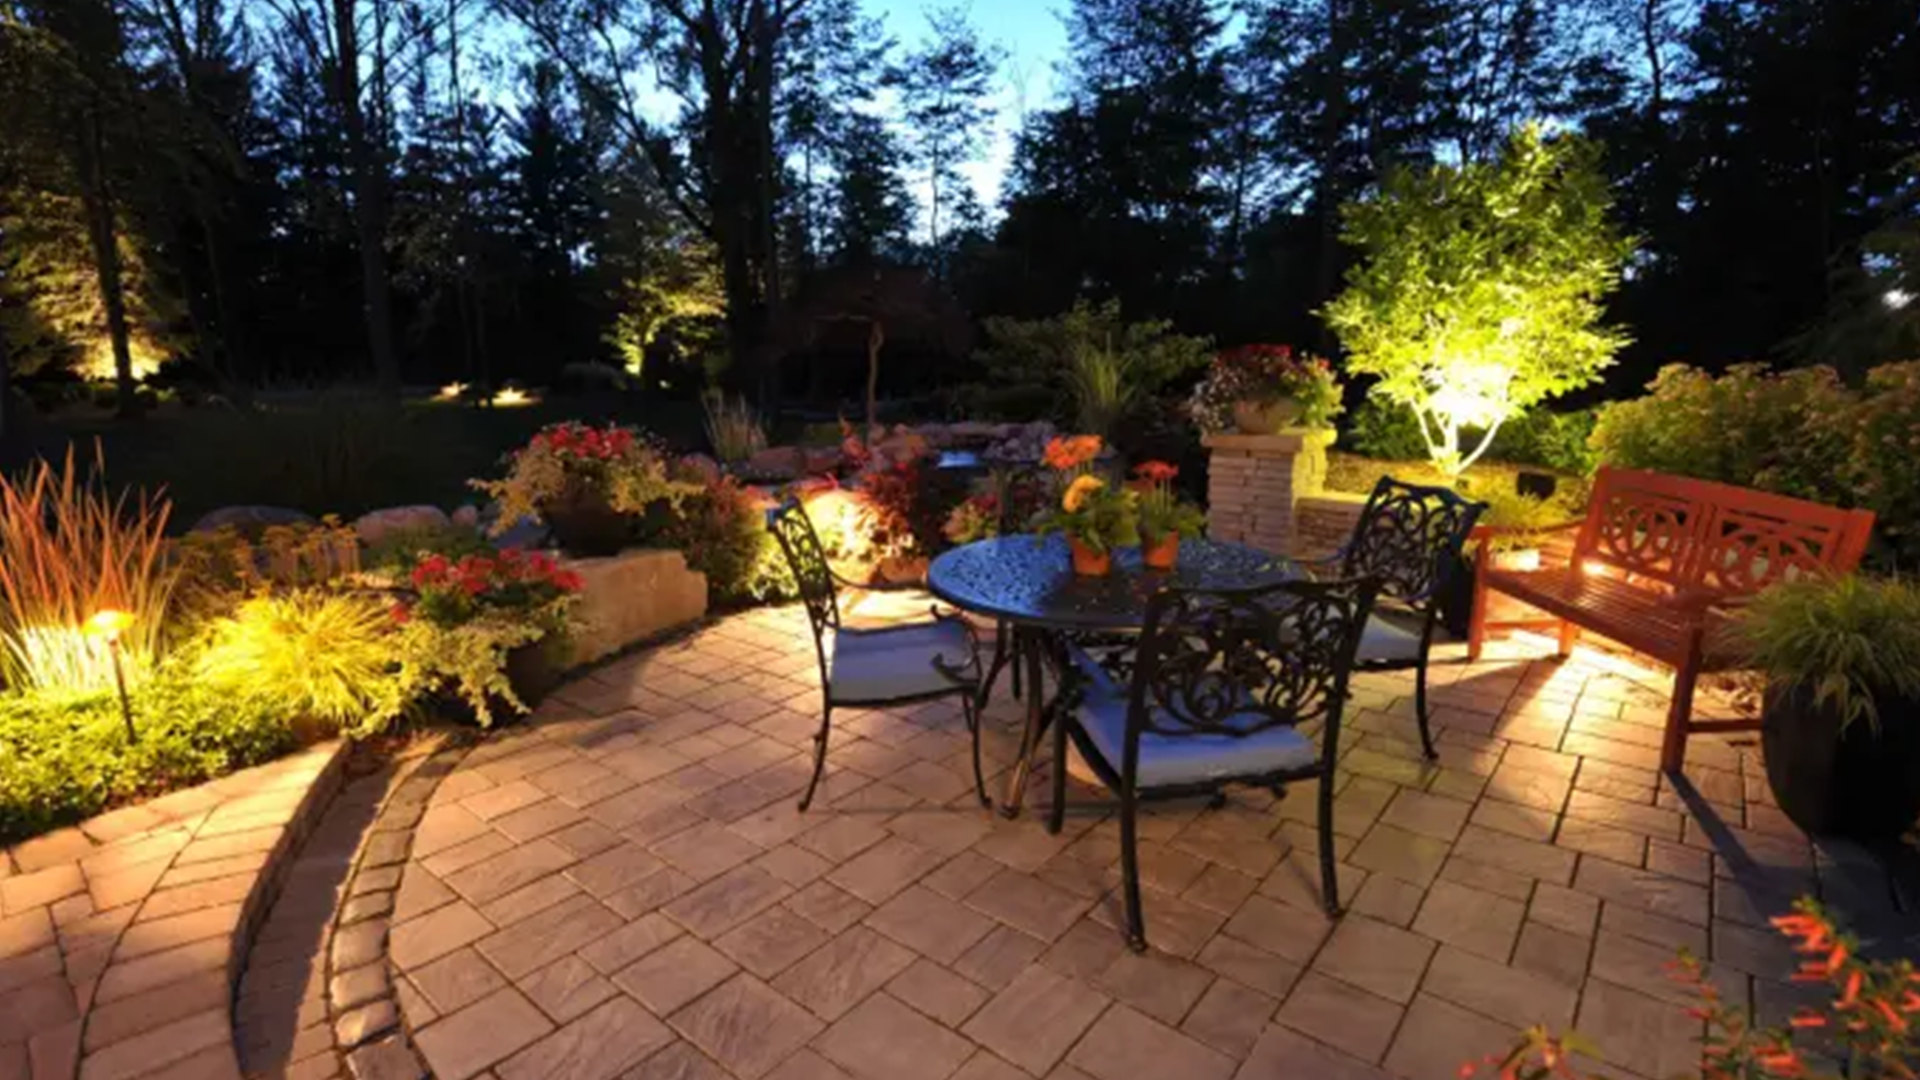 ornate garden table set up and landscape lighting